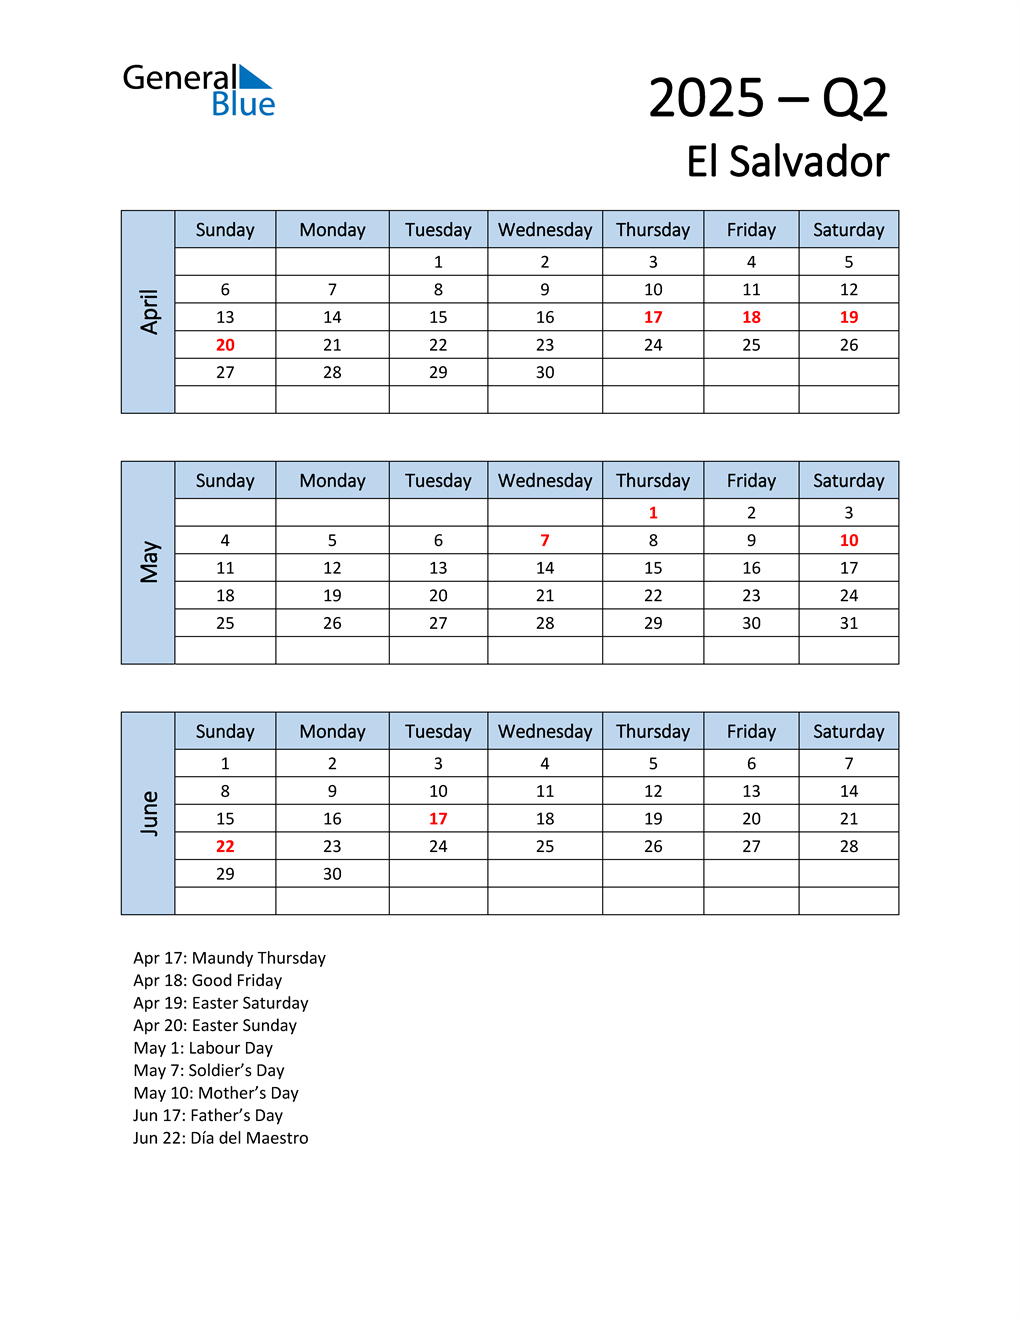  Free Q2 2025 Calendar for El Salvador